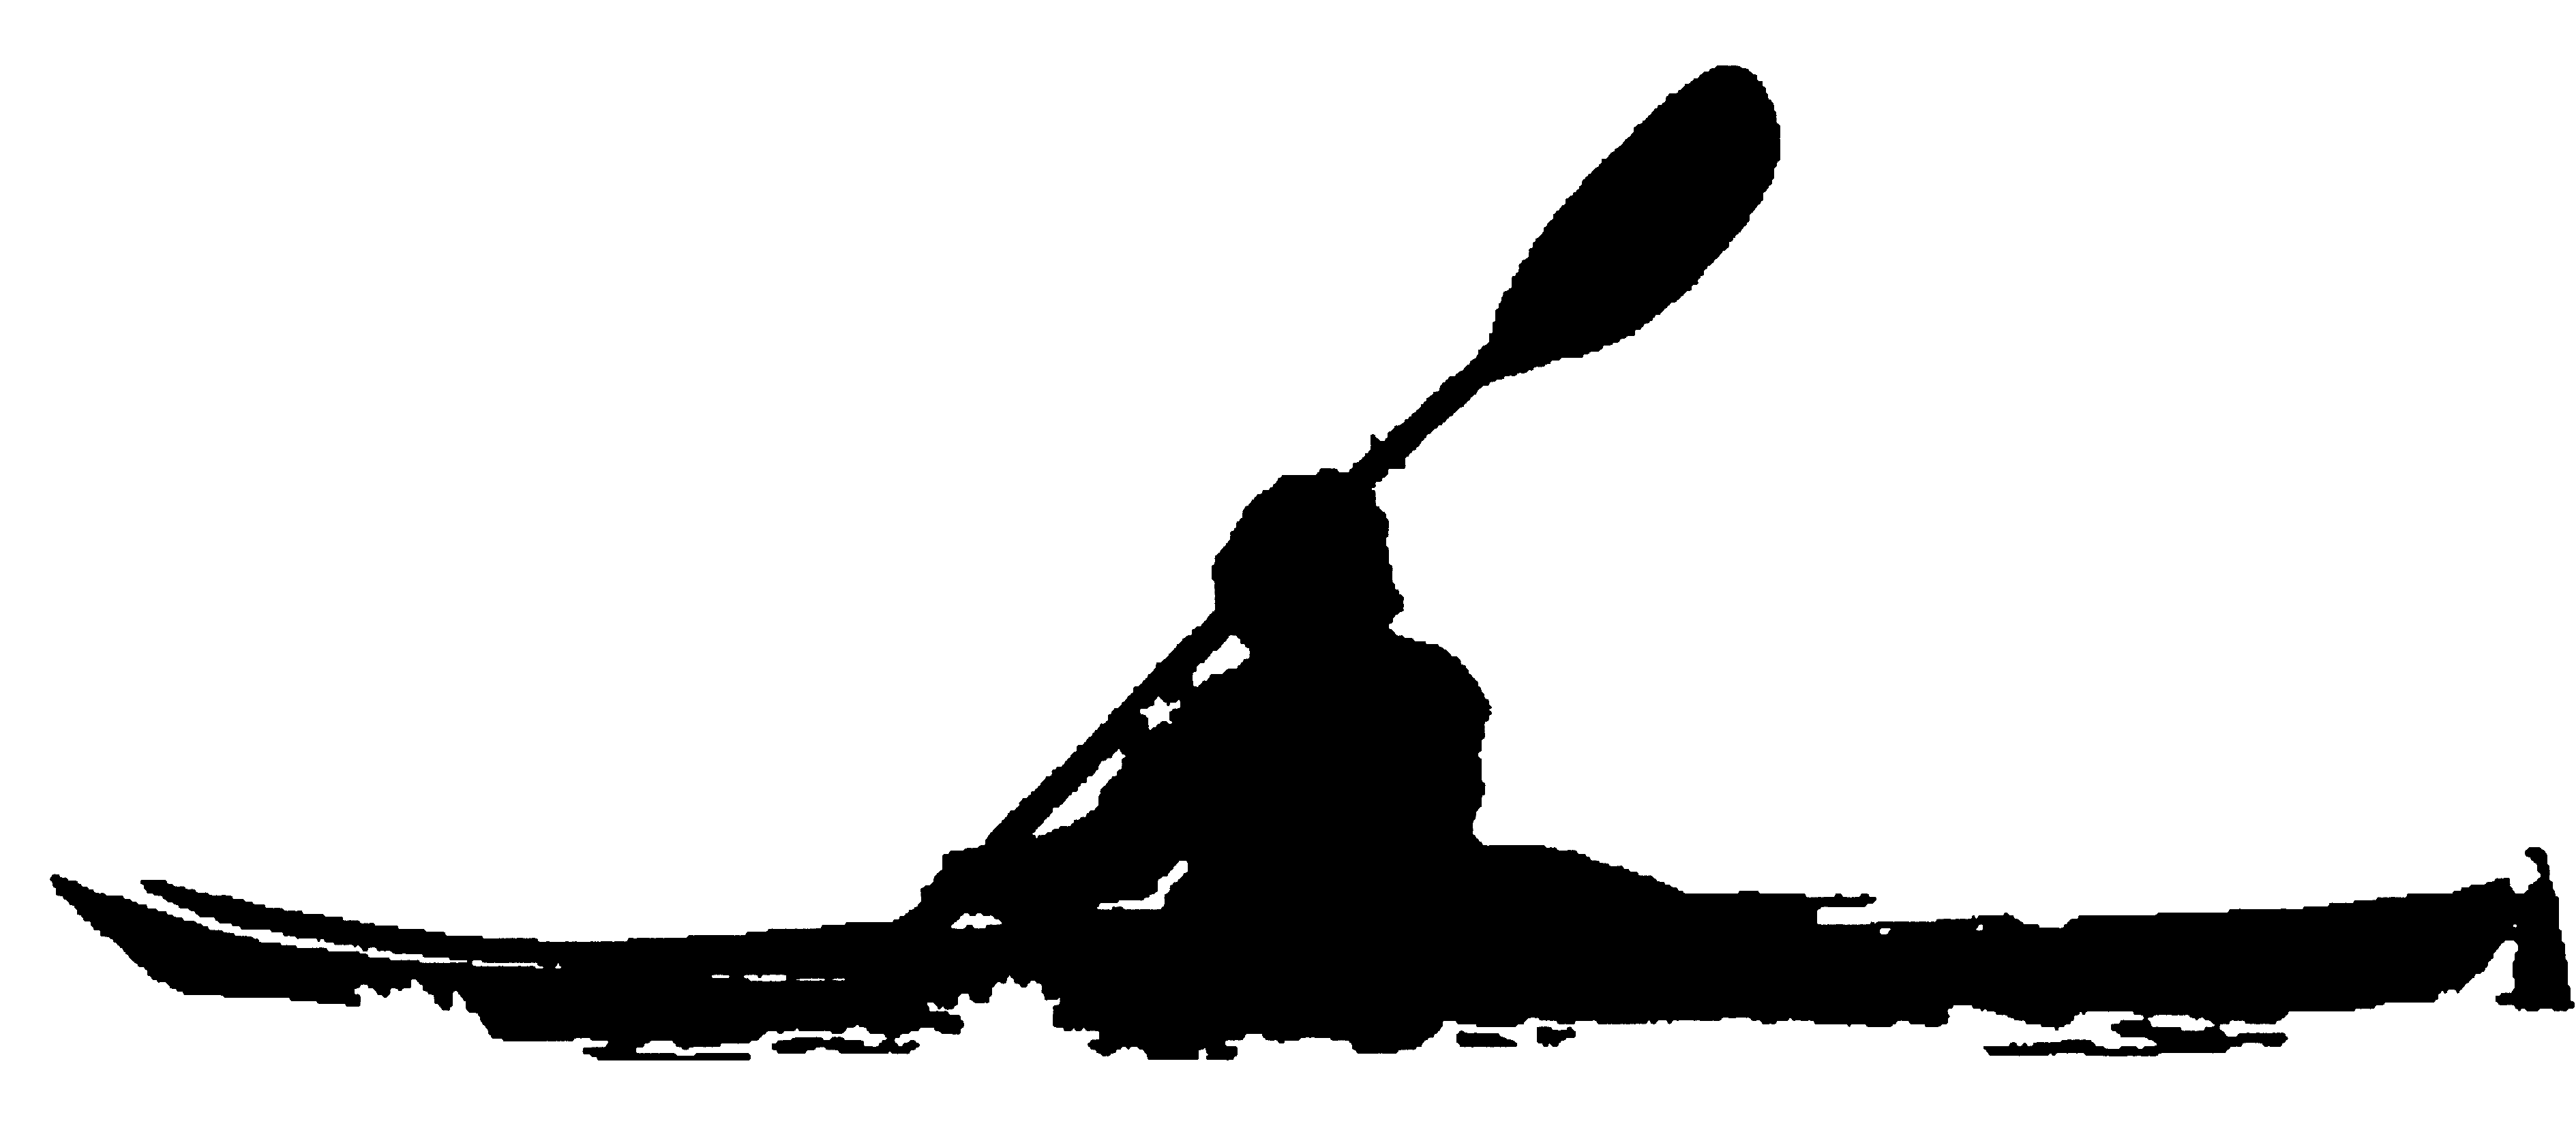 Canoe clip art free. Kayaking clipart